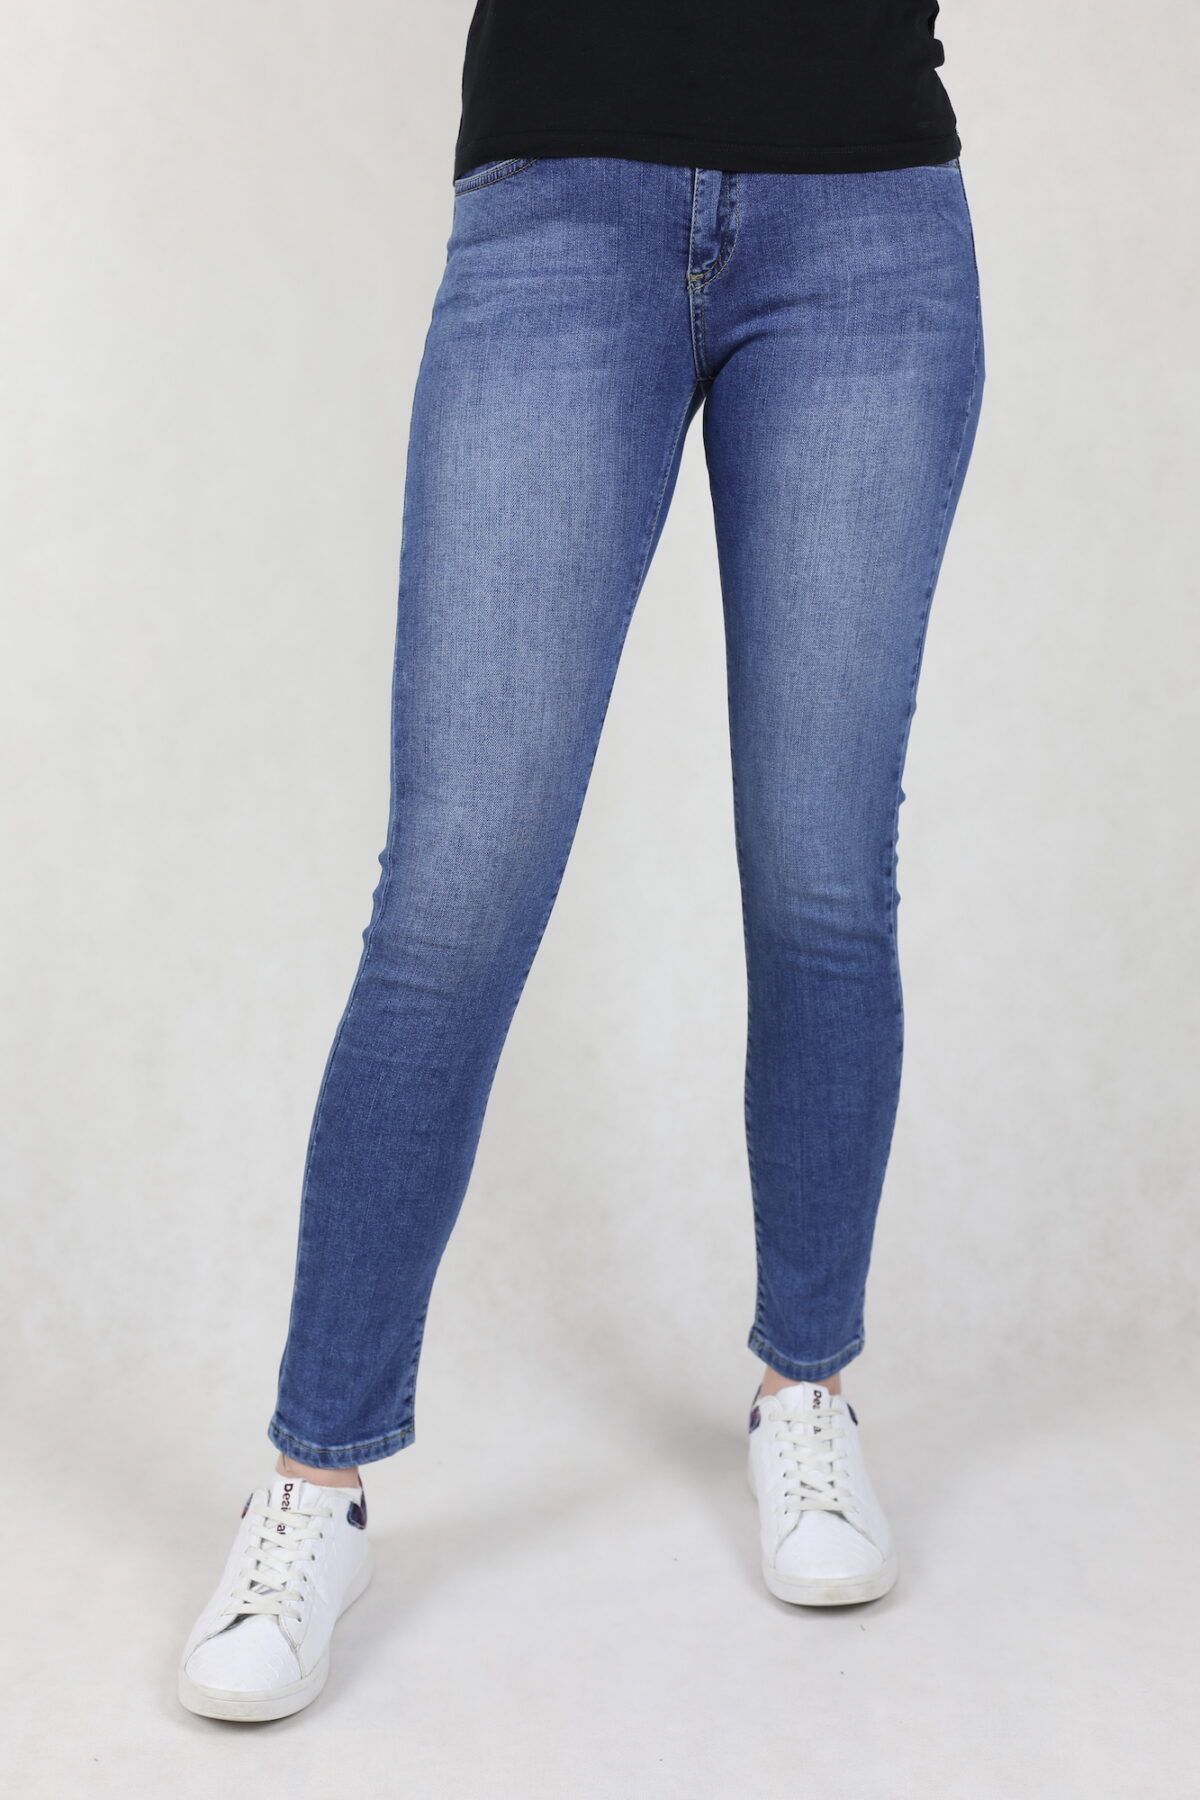 Damskie jeansy comfort stretch, niebieskie, z przetarciami, stan wysoki, nogawka prosta.